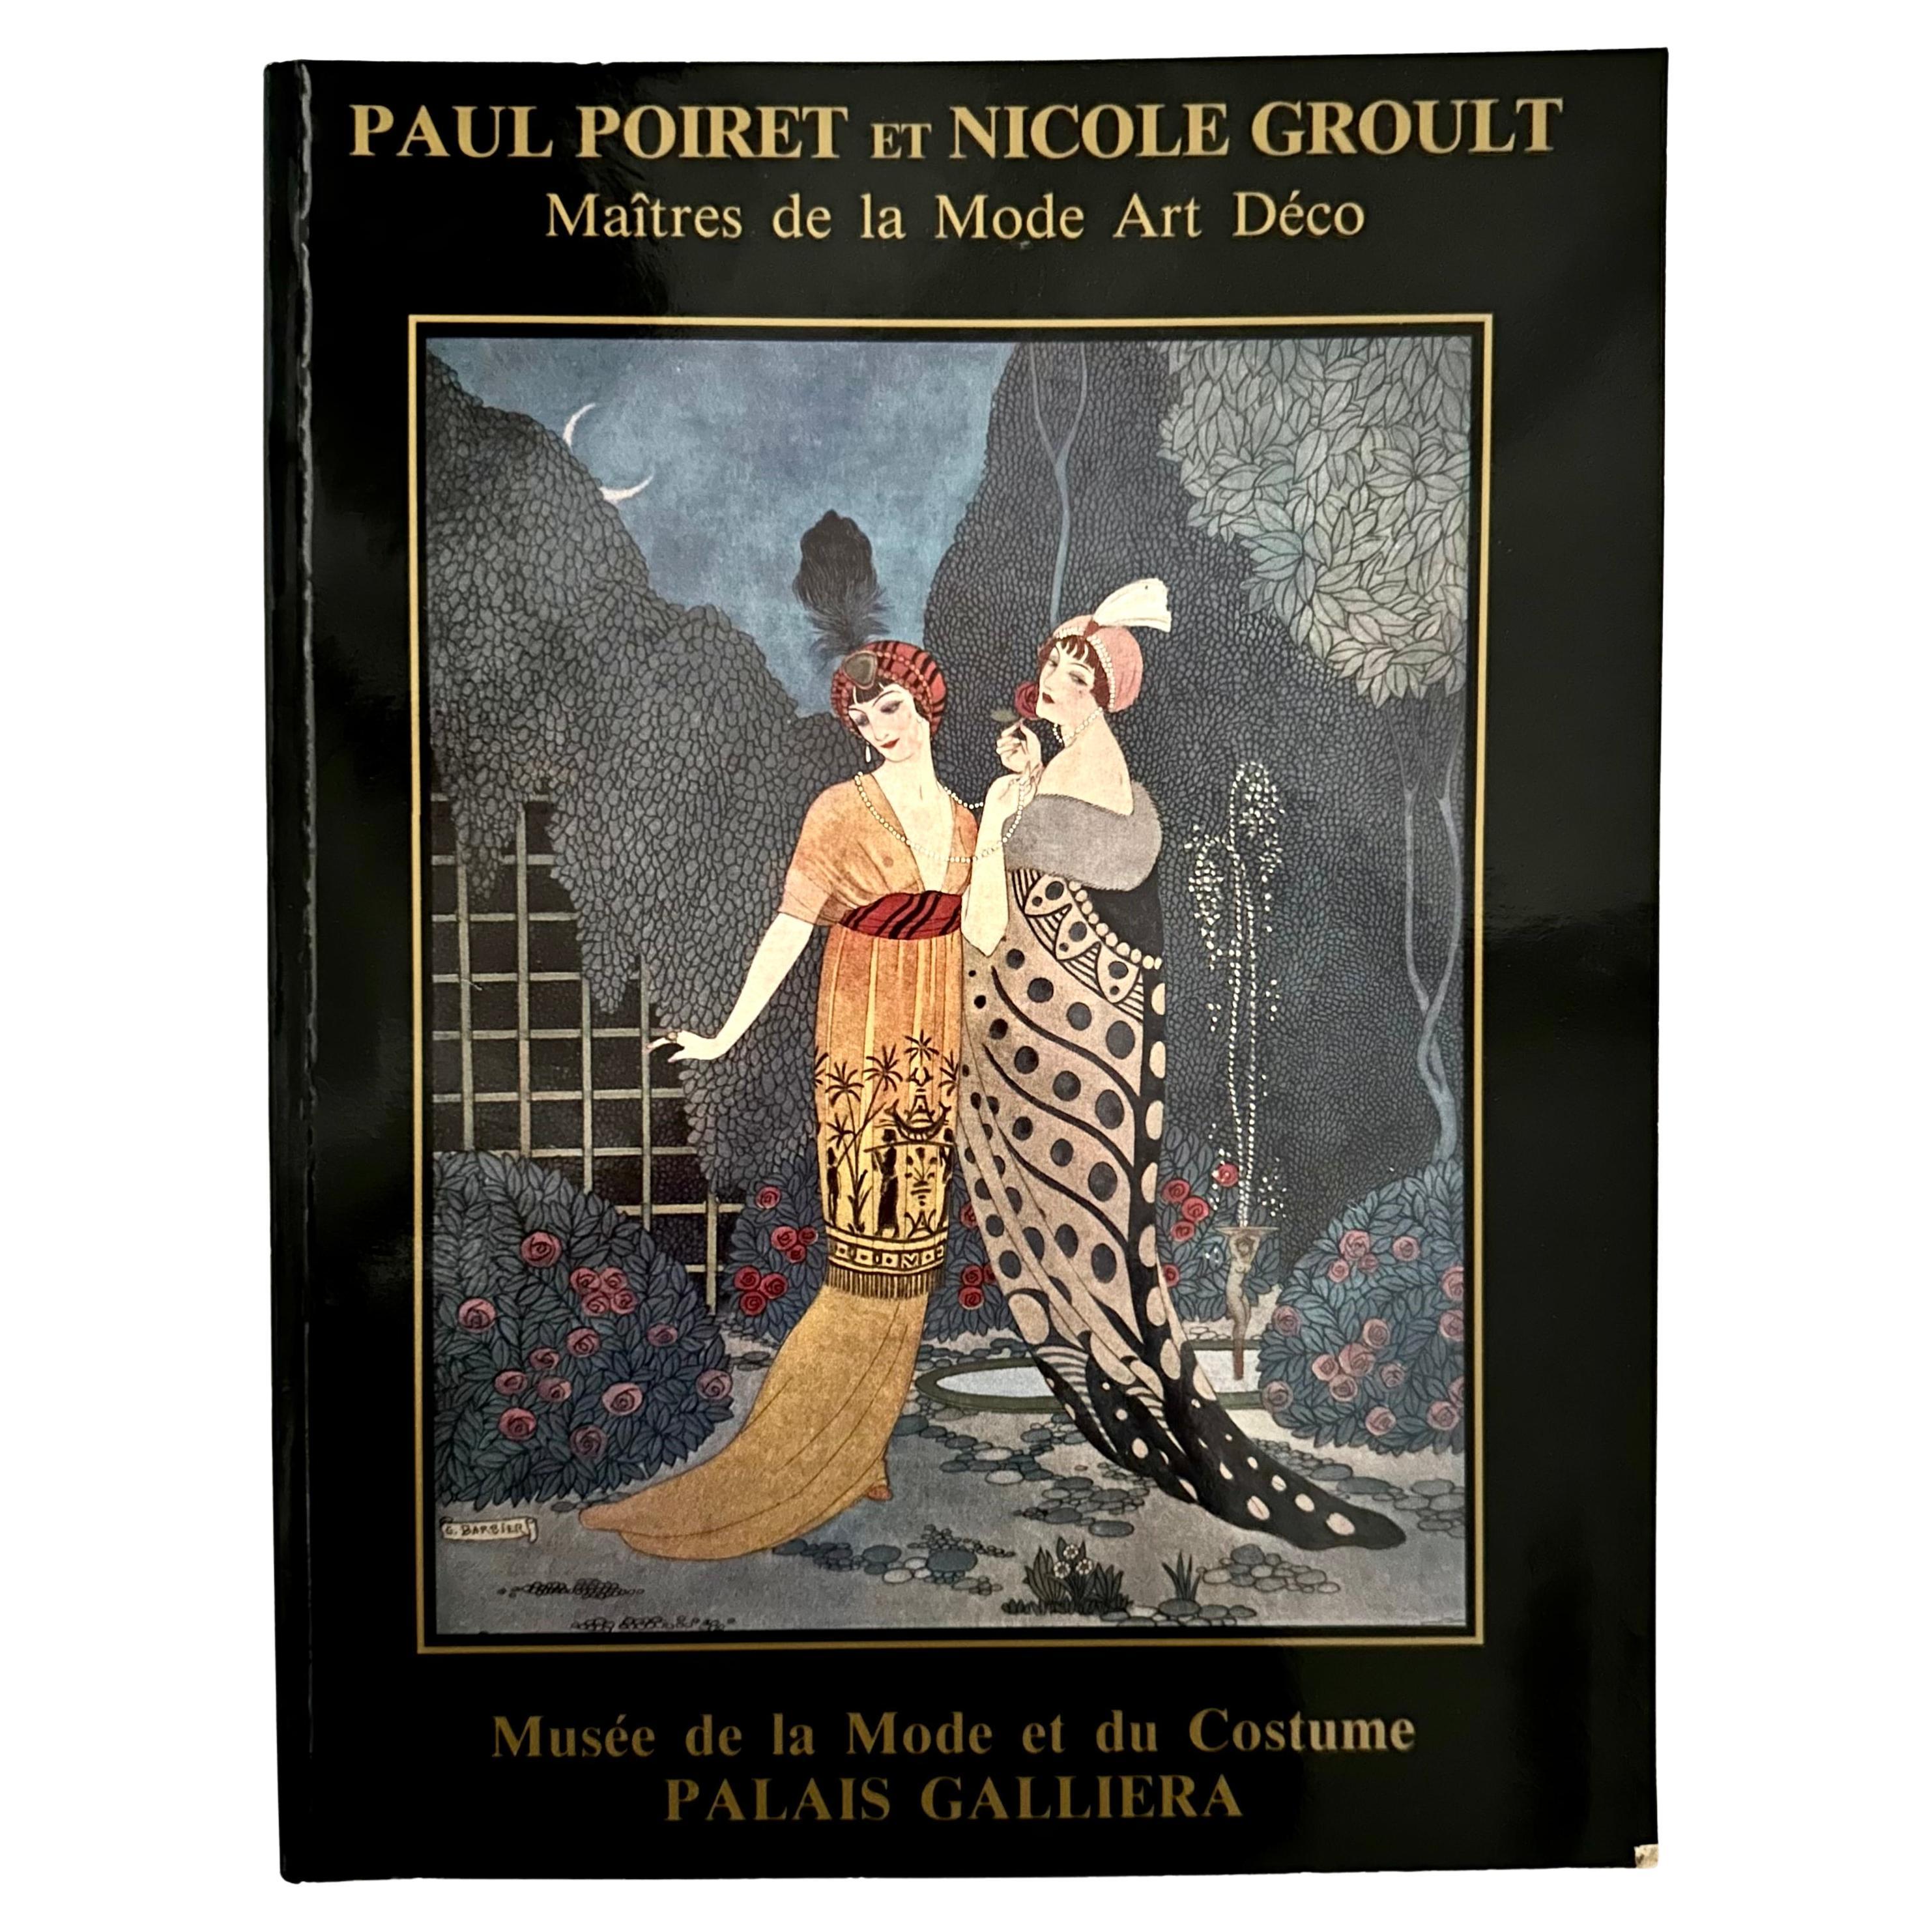 Paul Poiret et Nicole Groult : Maître de la Mode Art Déco - 1ère édition, Paris, 1986